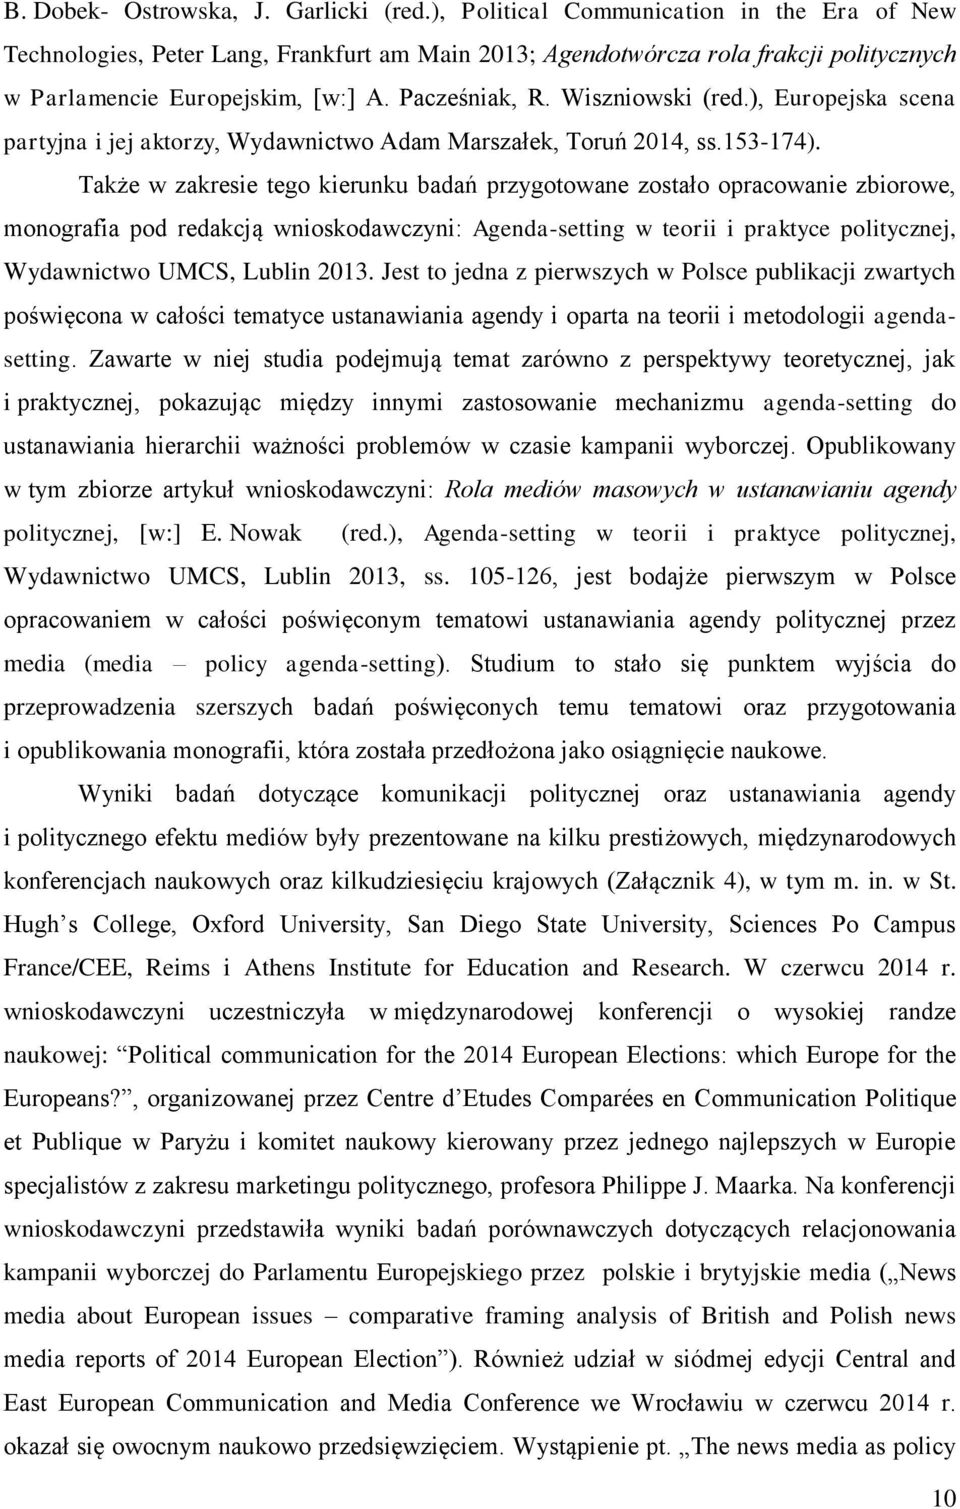 Wiszniowski (red.), Europejska scena partyjna i jej aktorzy, Wydawnictwo Adam Marszałek, Toruń 2014, ss.153-174).